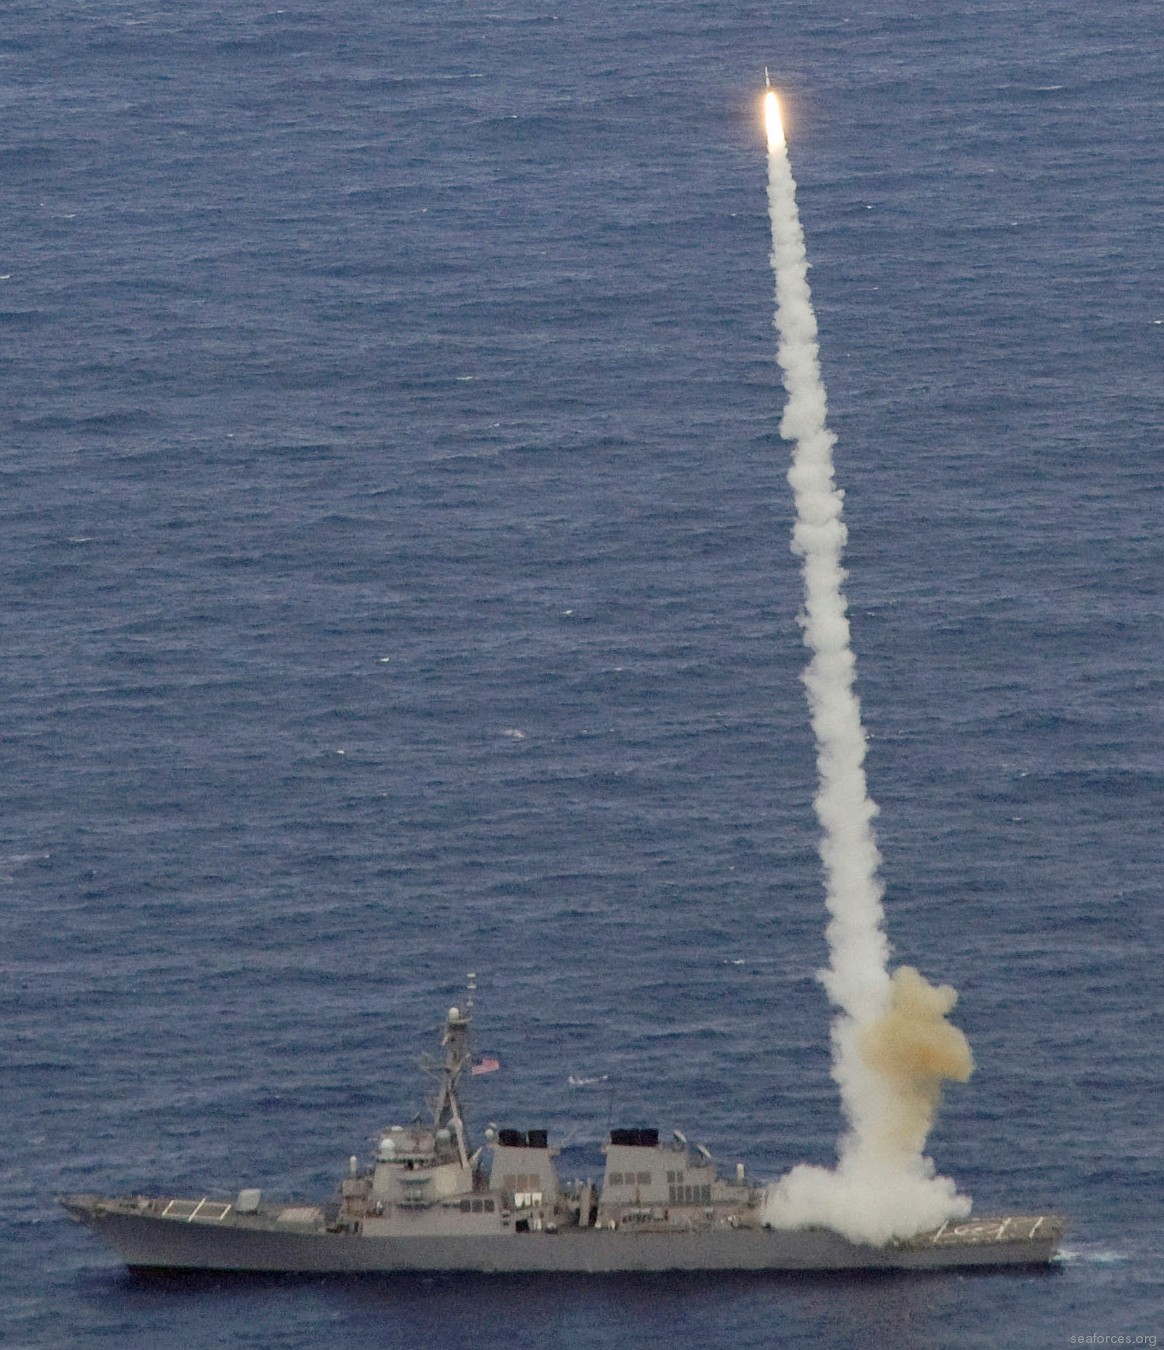 ddg-54 uss curtis wilbur destroyer us navy 51 standard missile sm-2